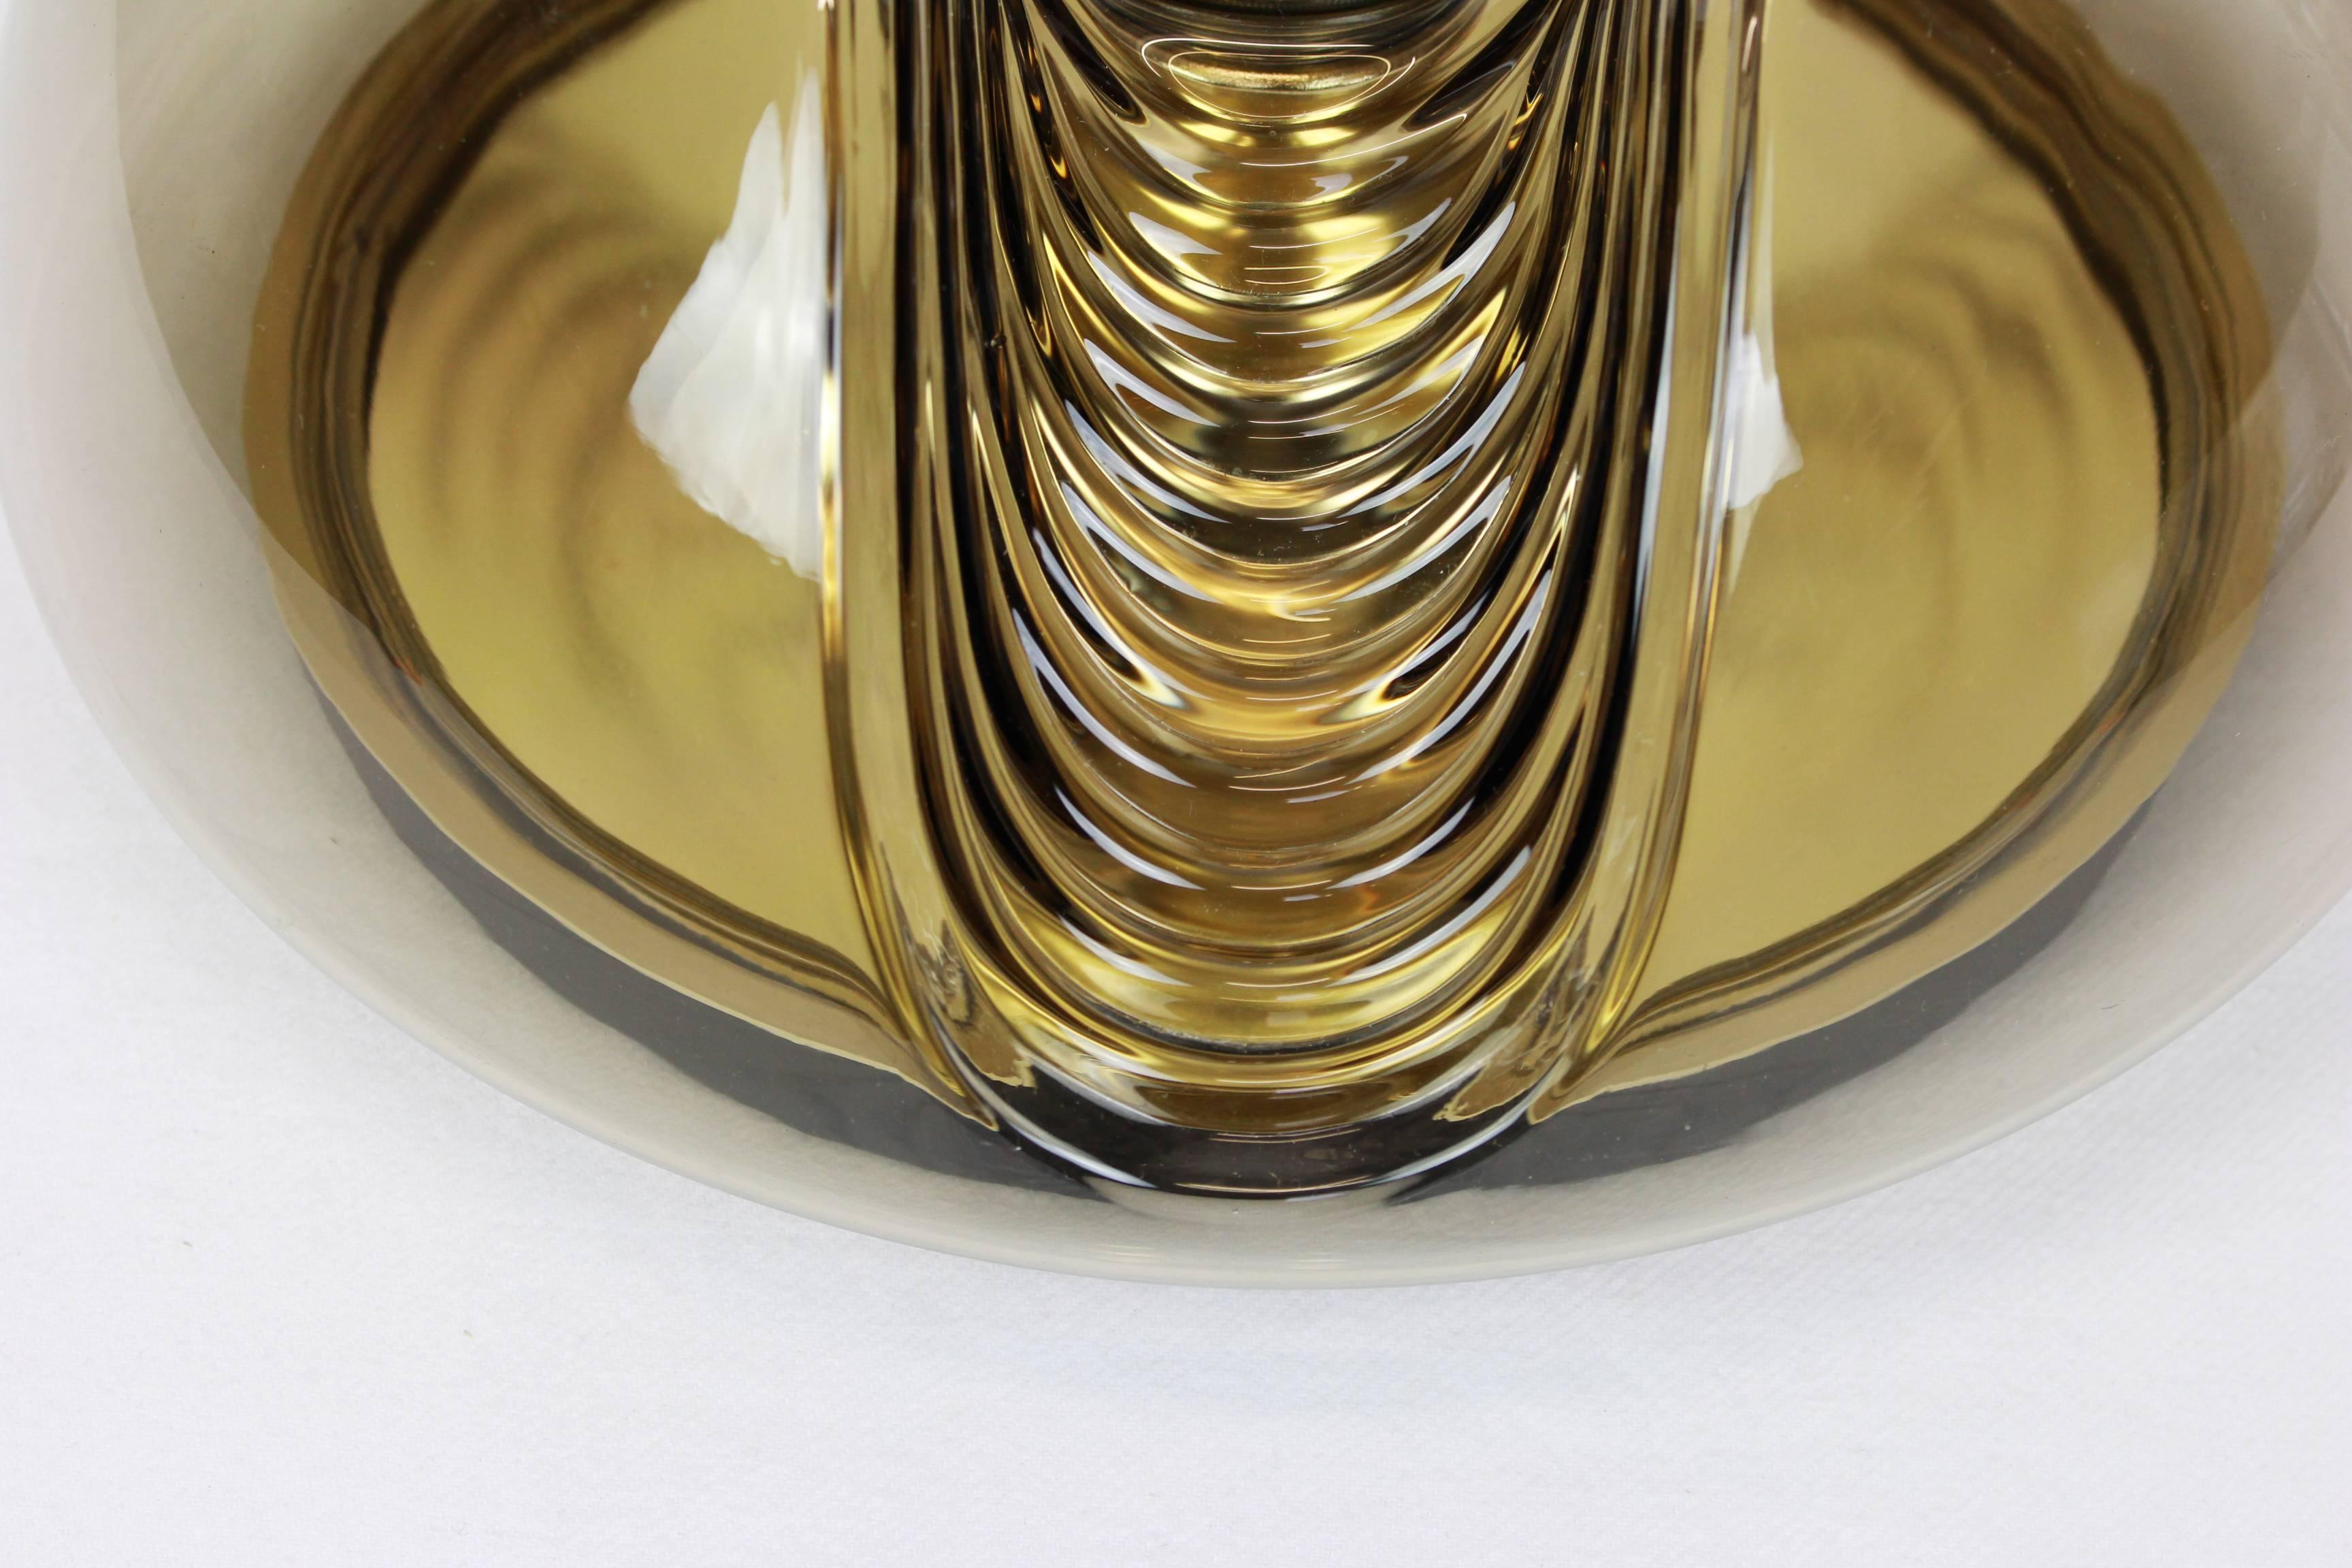 Une applique ou une monture encastrée spéciale en verre fumé biomorphe rond, conçue par Koch & Lowy pour Peill & Putzler, fabriquée en Allemagne, vers les années 1970.

De haute qualité et en très bon état. Nettoyé, bien câblé et prêt à être